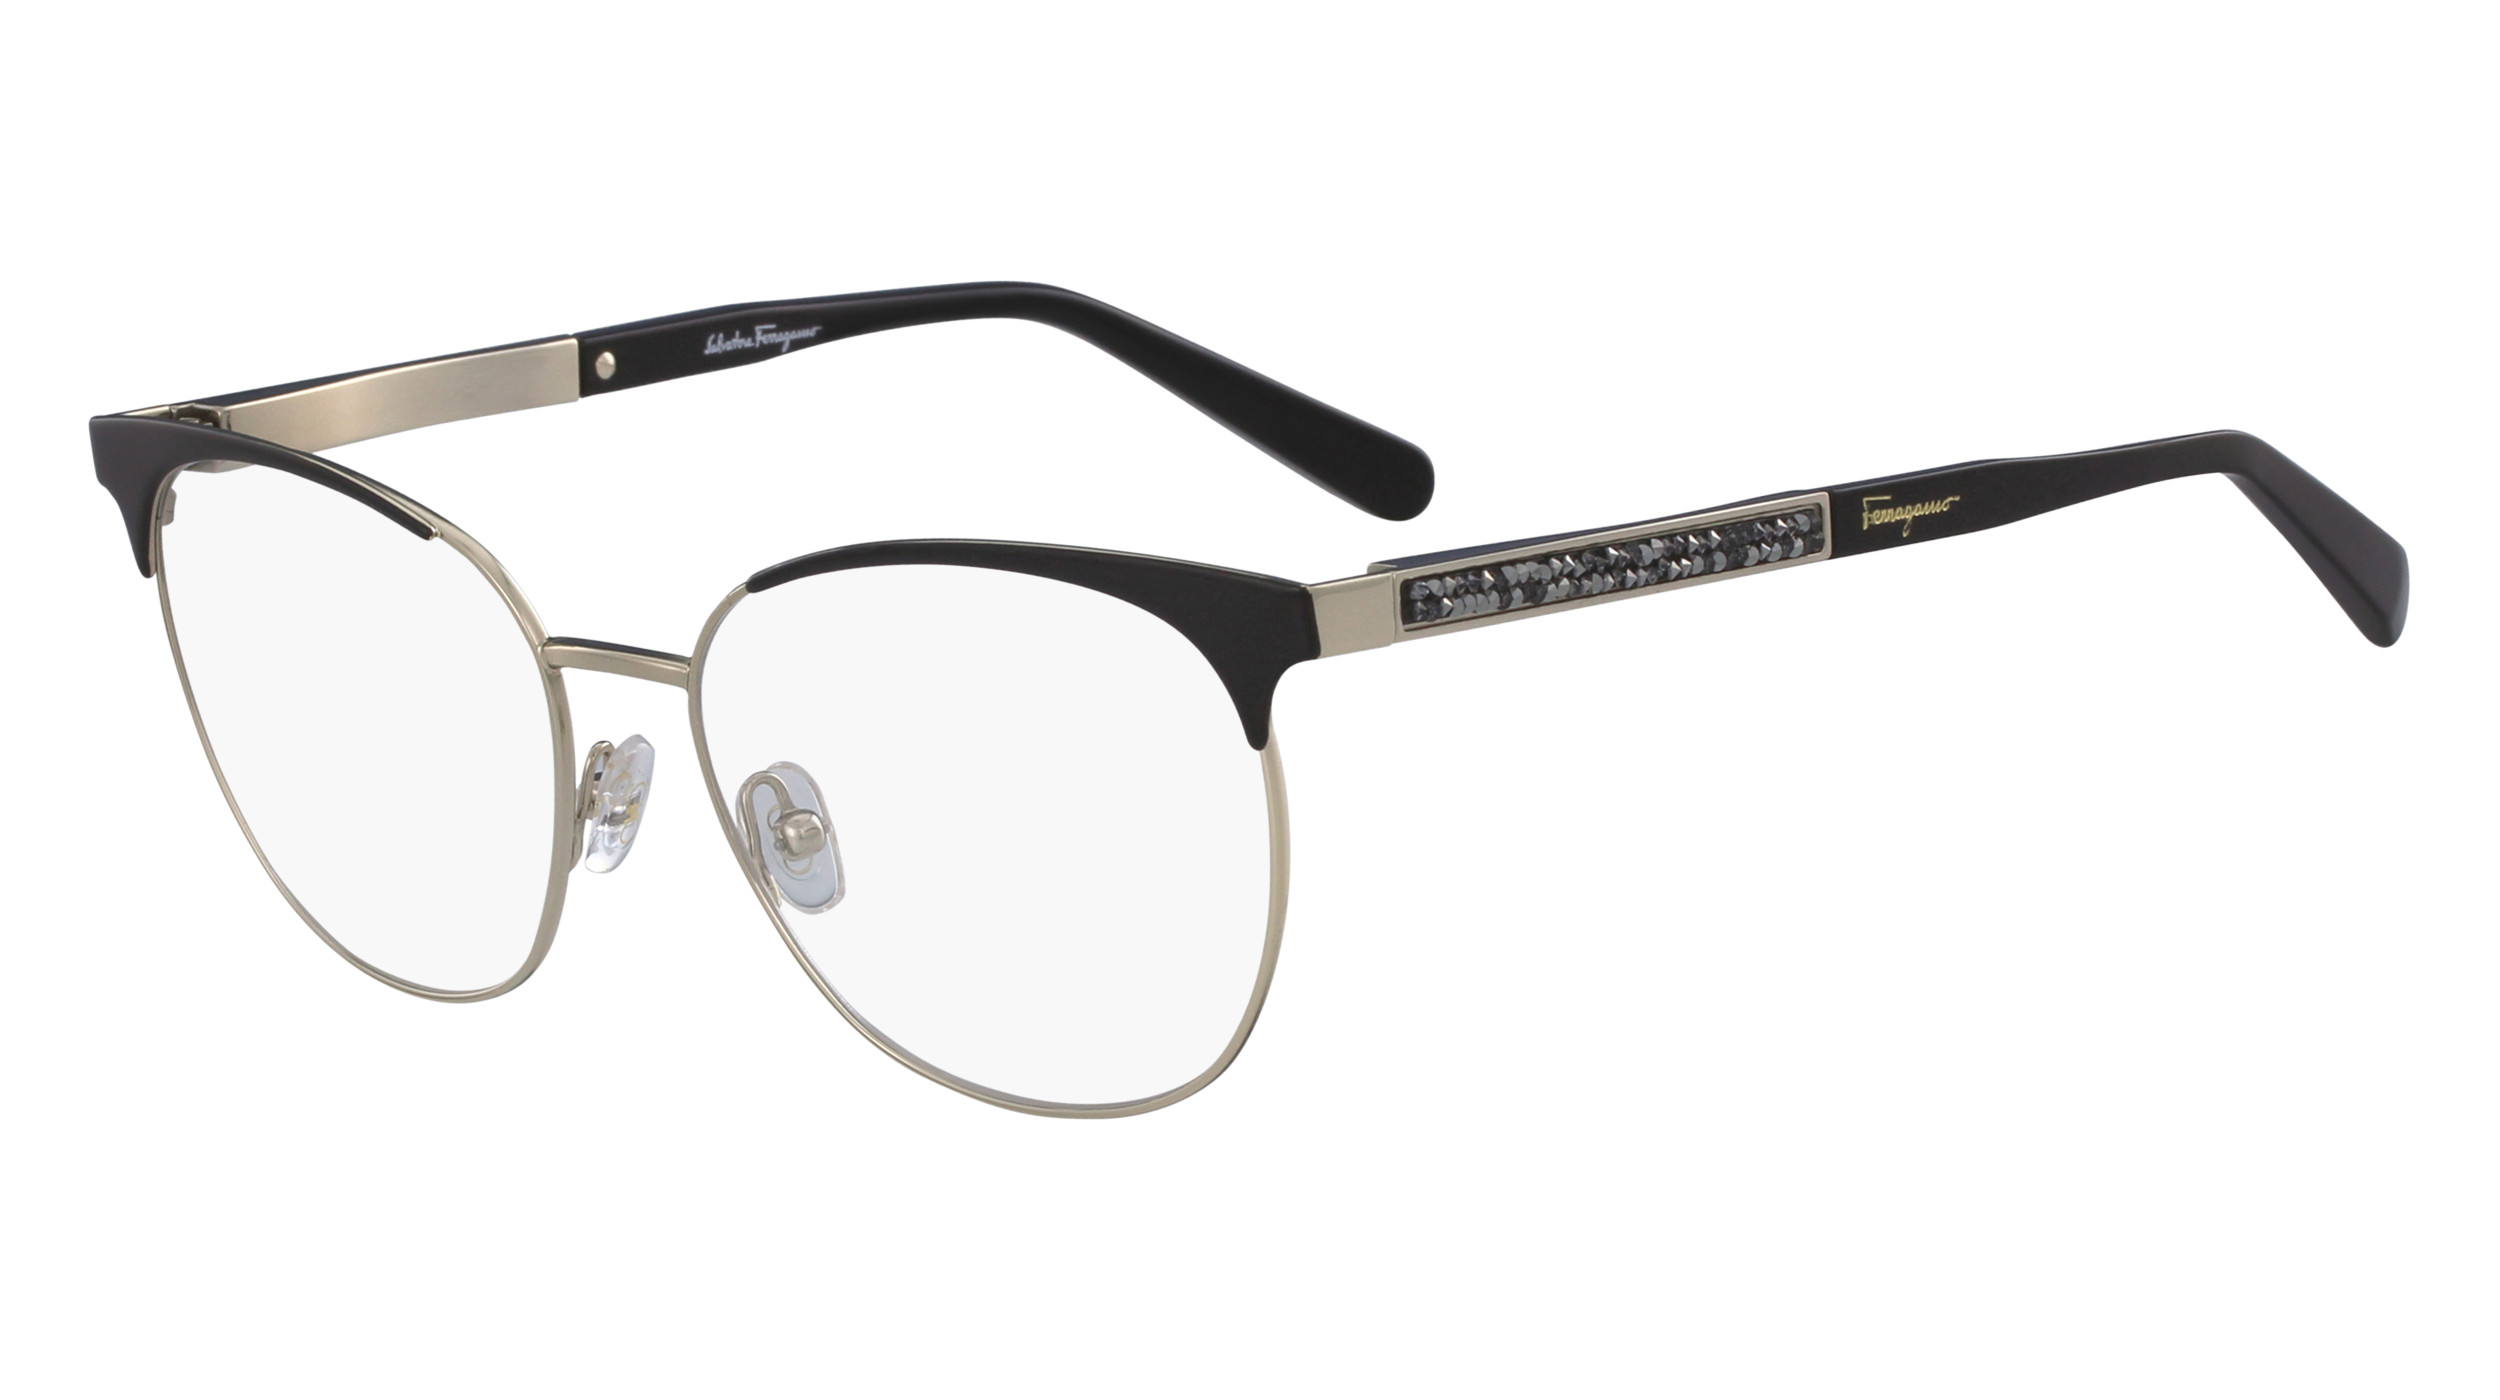 Ferragamo SF2166R Eyeglasses - Salvatore Ferragamo Authorized Retailer ...